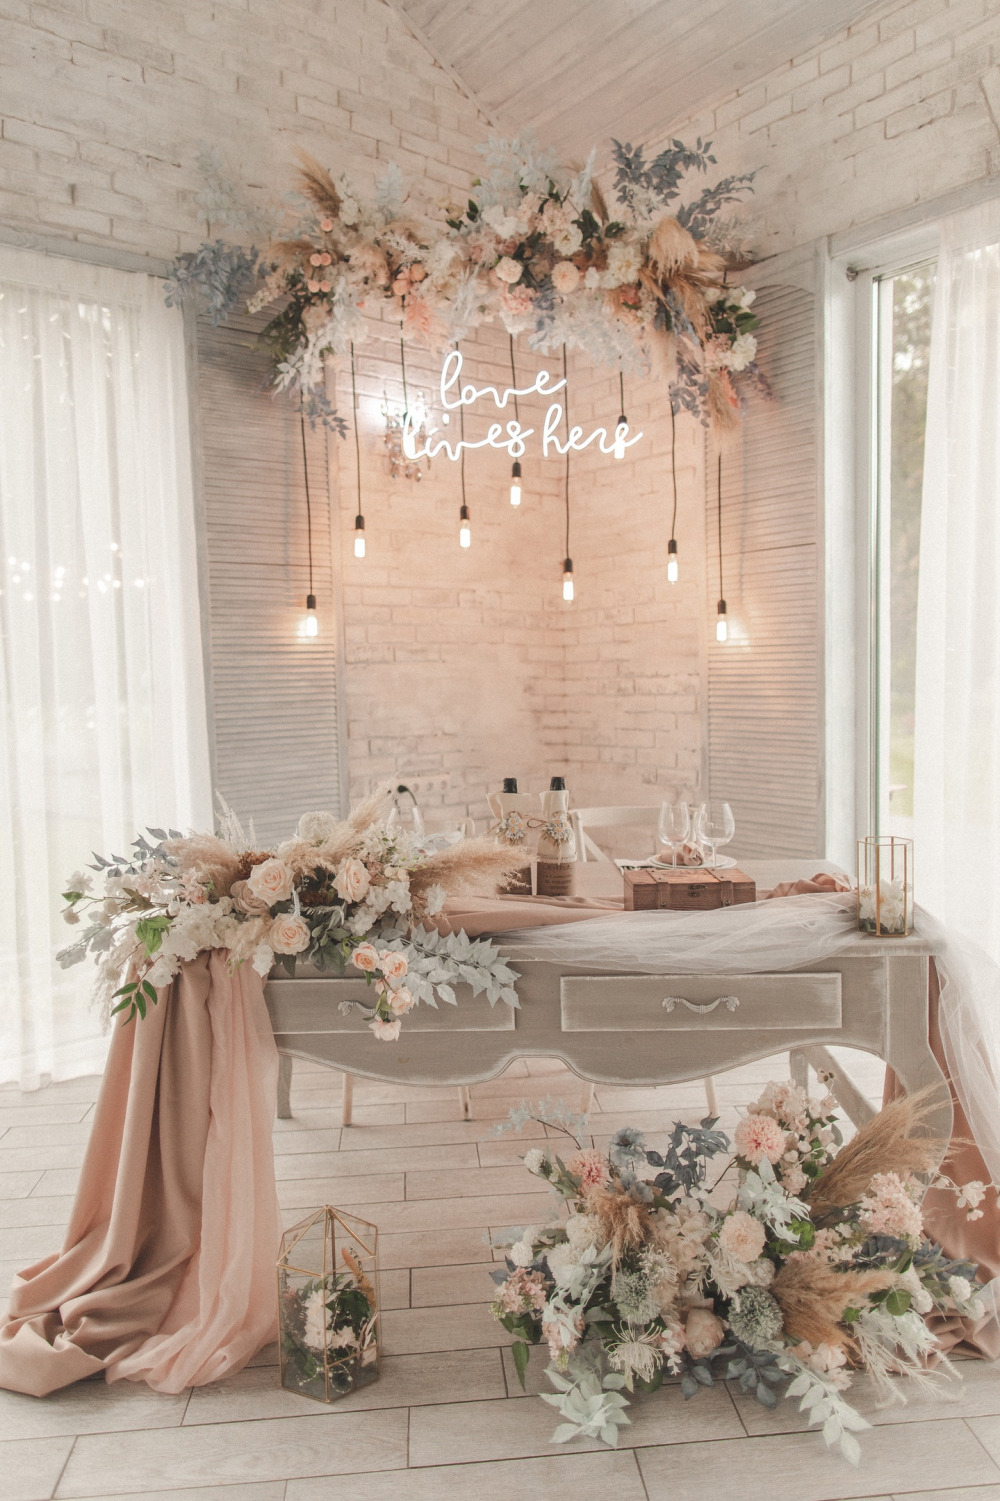 Декор стола для жениха и невесты с ретро-лампочками